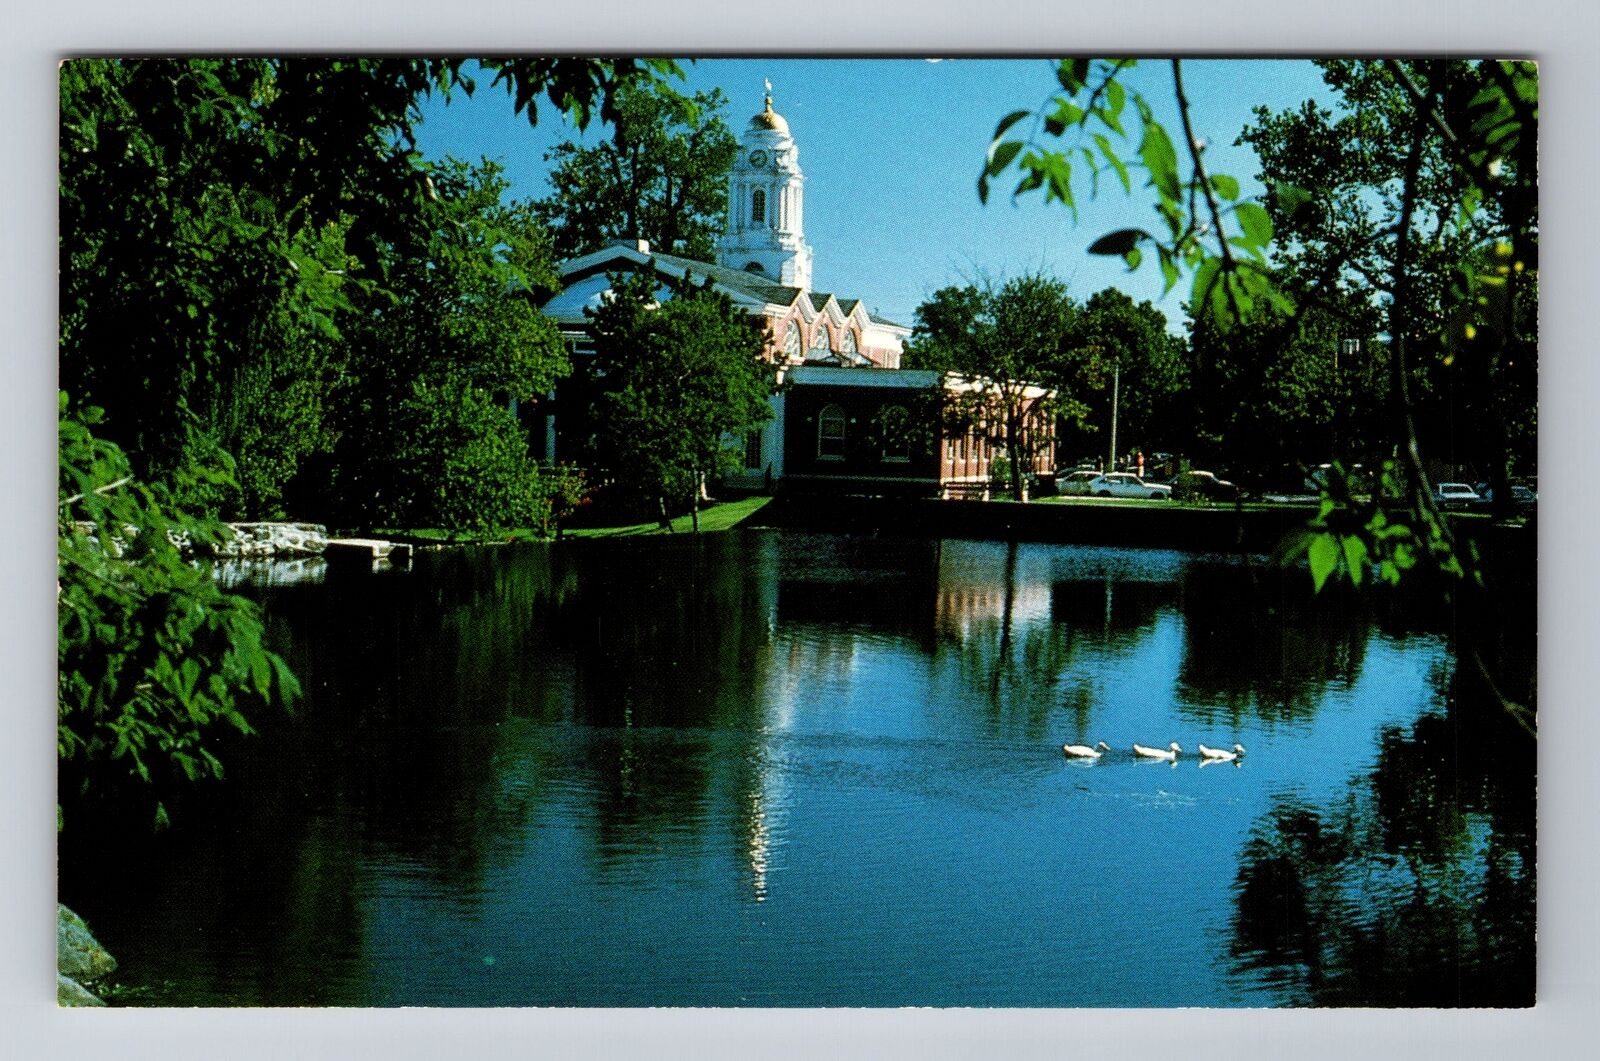 Milford CT-Connecticut, City Hall, Antique, Vintage Souvenir Postcard